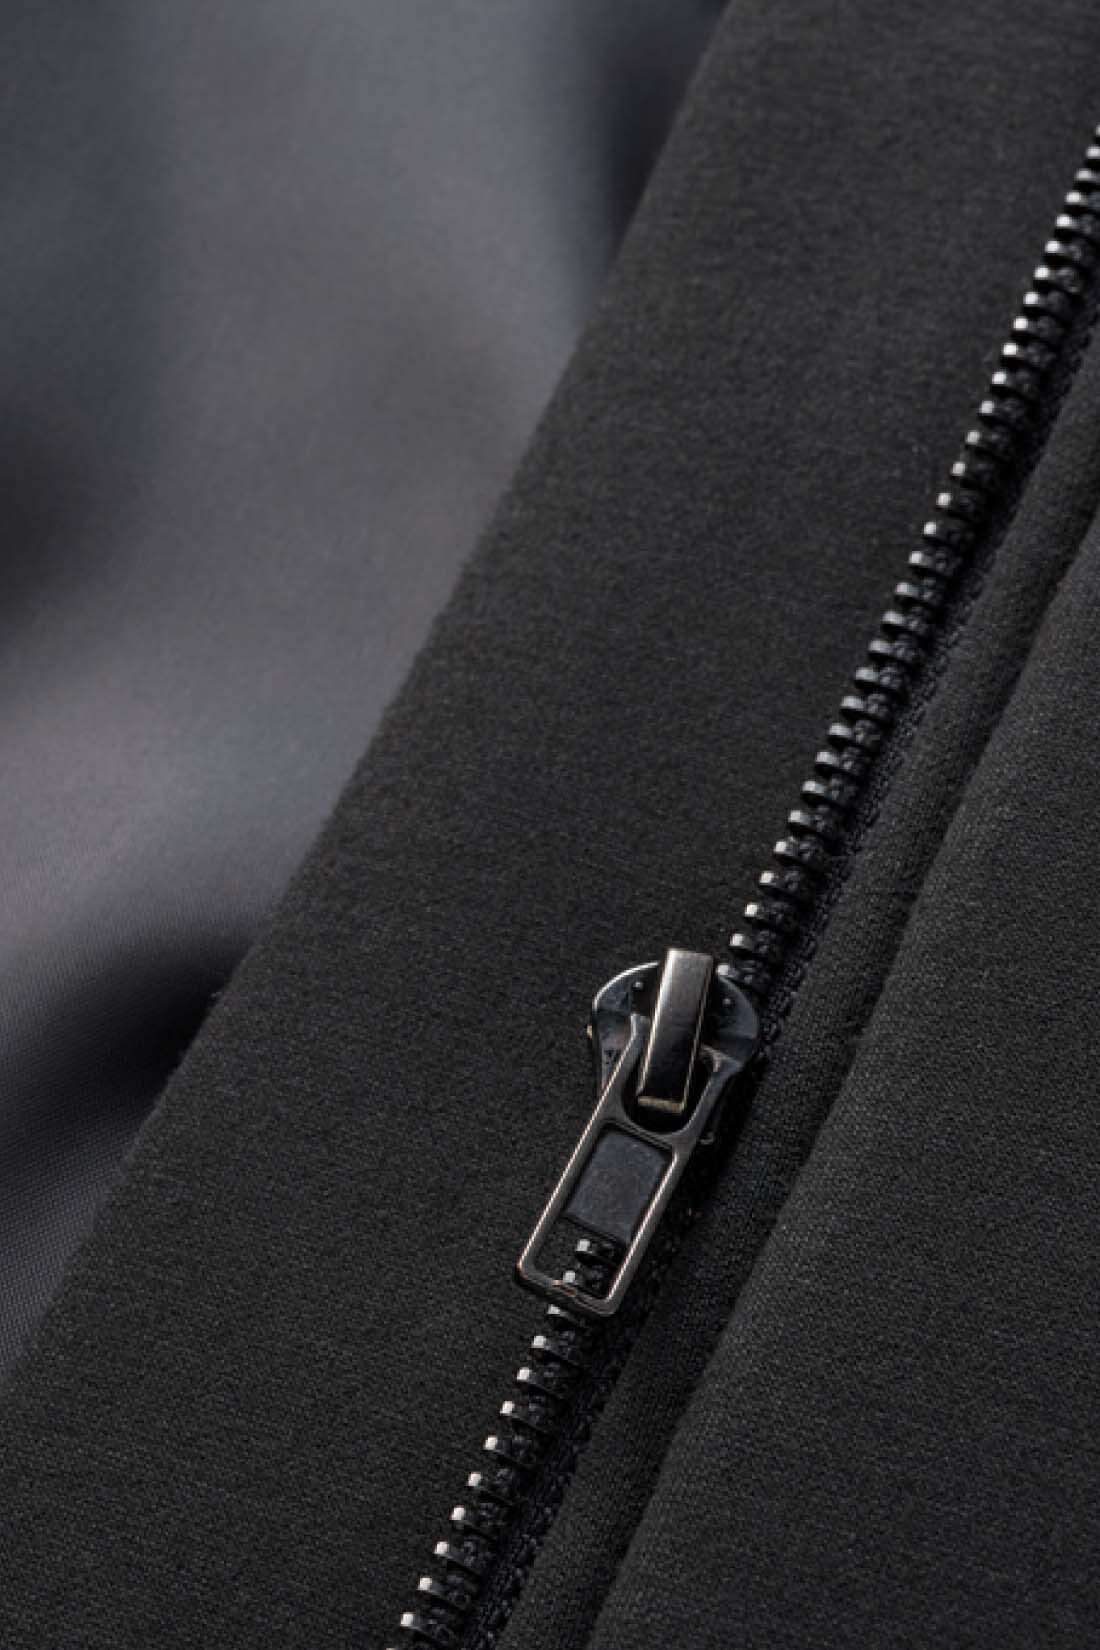 Real Stock|IEDIT[イディット]　シルエット変化を楽しむ ダンボール素材×キルティングの切り替えデザインコート〈ブラック〉|きちんと裏地付きのコート仕立てなので、袖のすべりもよく暖か。